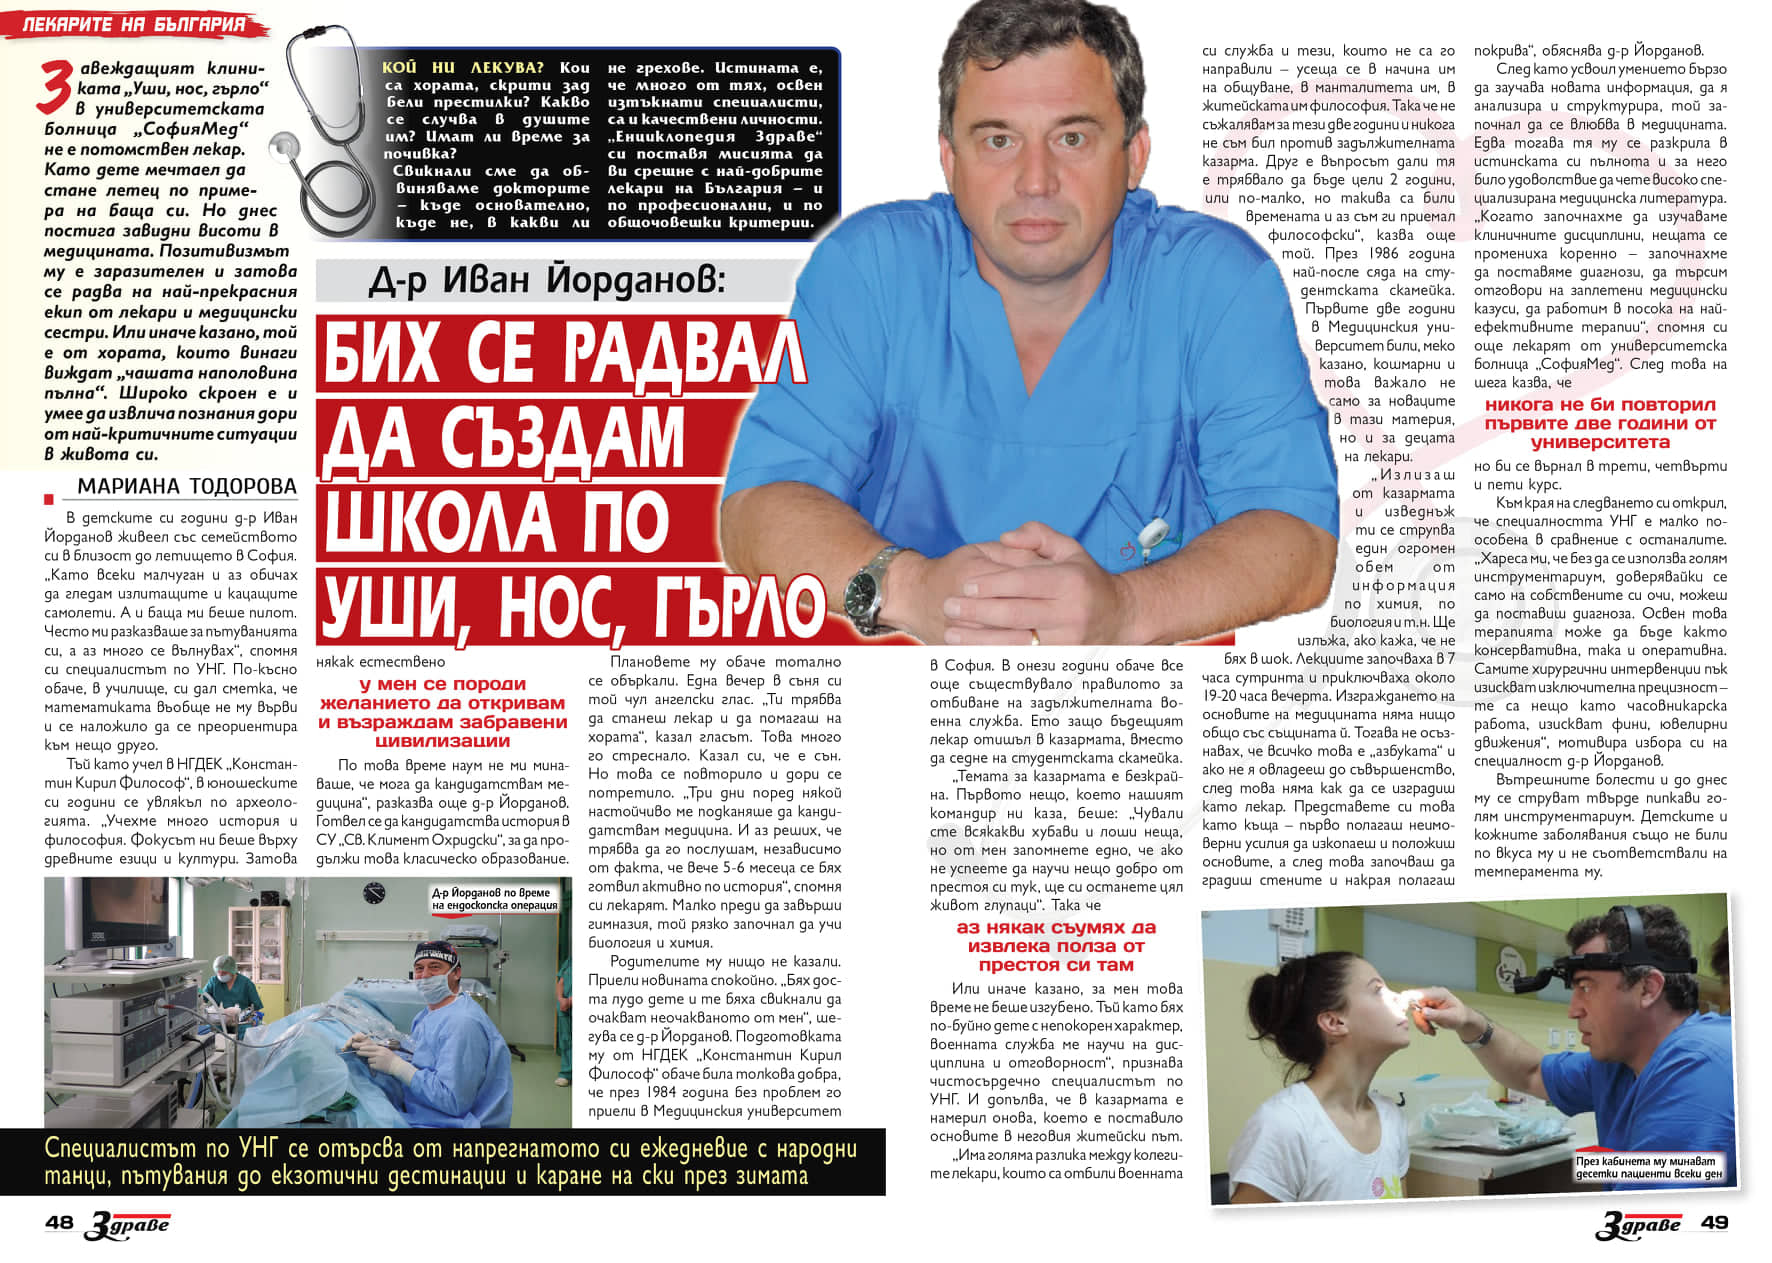 Д-р Иван Йорданов: Бих се радвал да създам  школа по „Уши, нос, гърло“